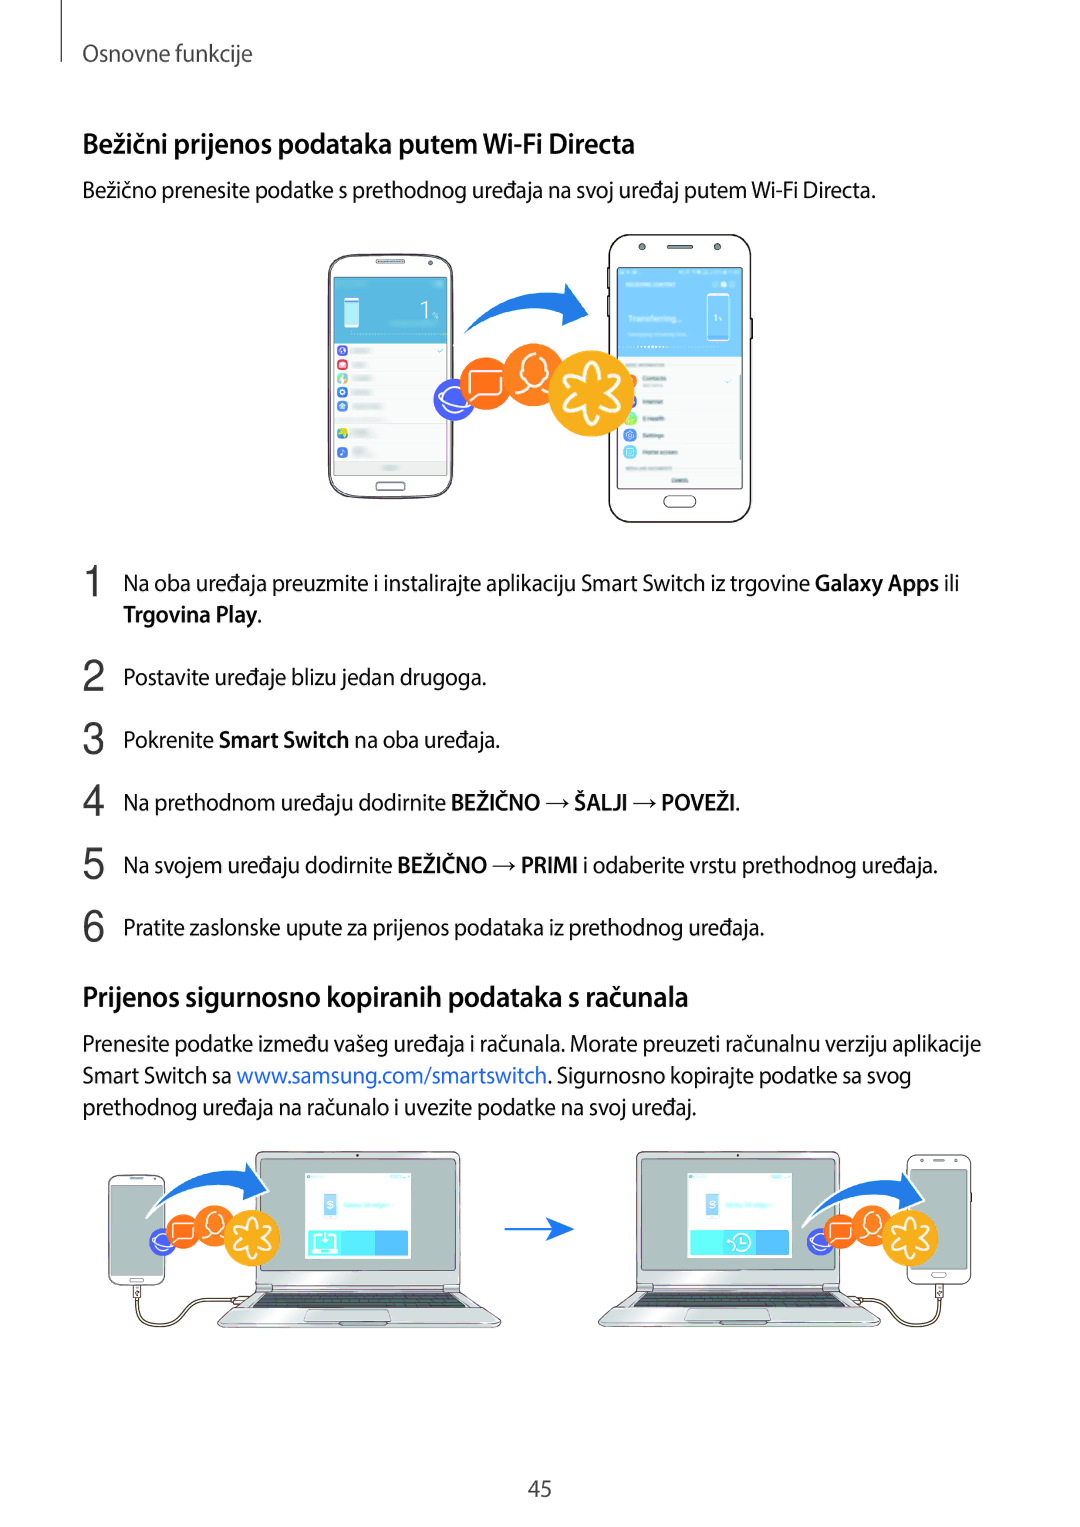 Samsung SM-J330FZDNSEE Bežični prijenos podataka putem Wi-Fi Directa, Prijenos sigurnosno kopiranih podataka s računala 